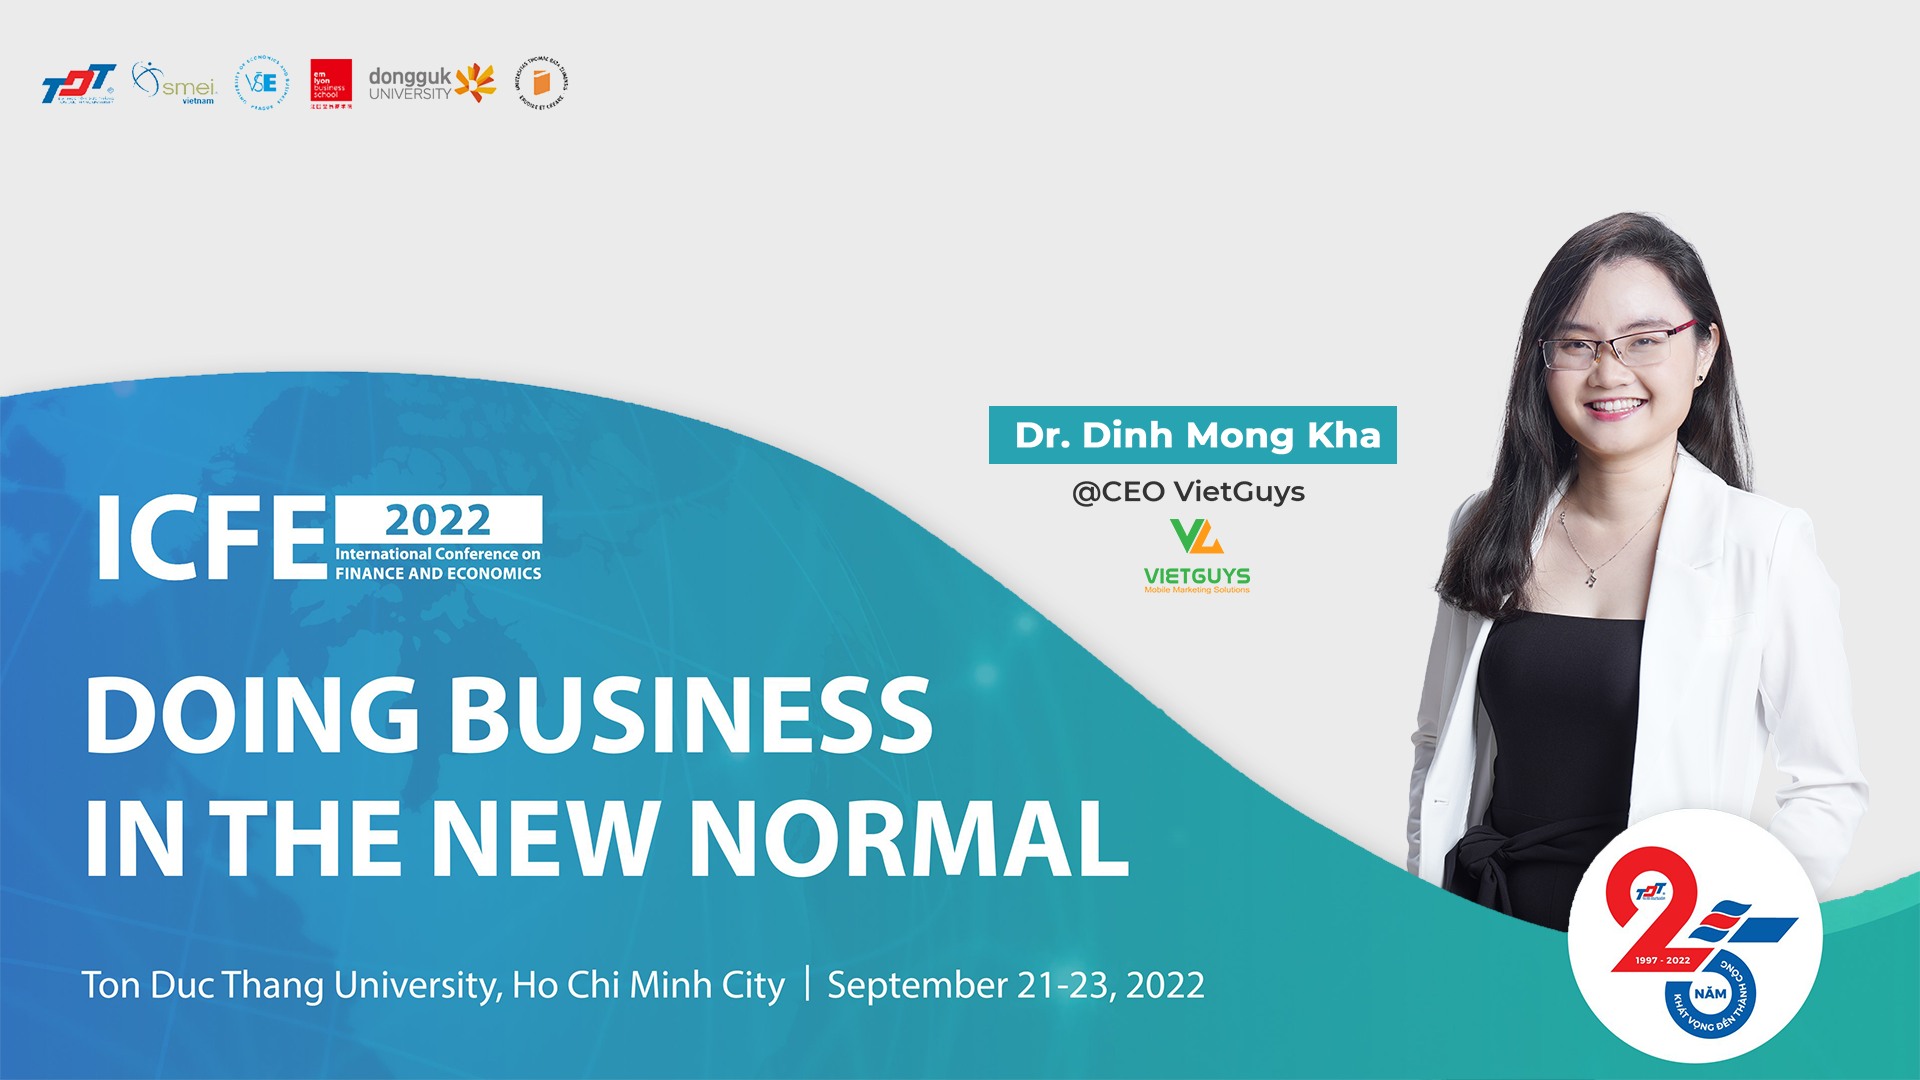 Sự kiện “Doing Business In The New Normal” với sự góp mặt của CEO Đinh Mộng Kha.